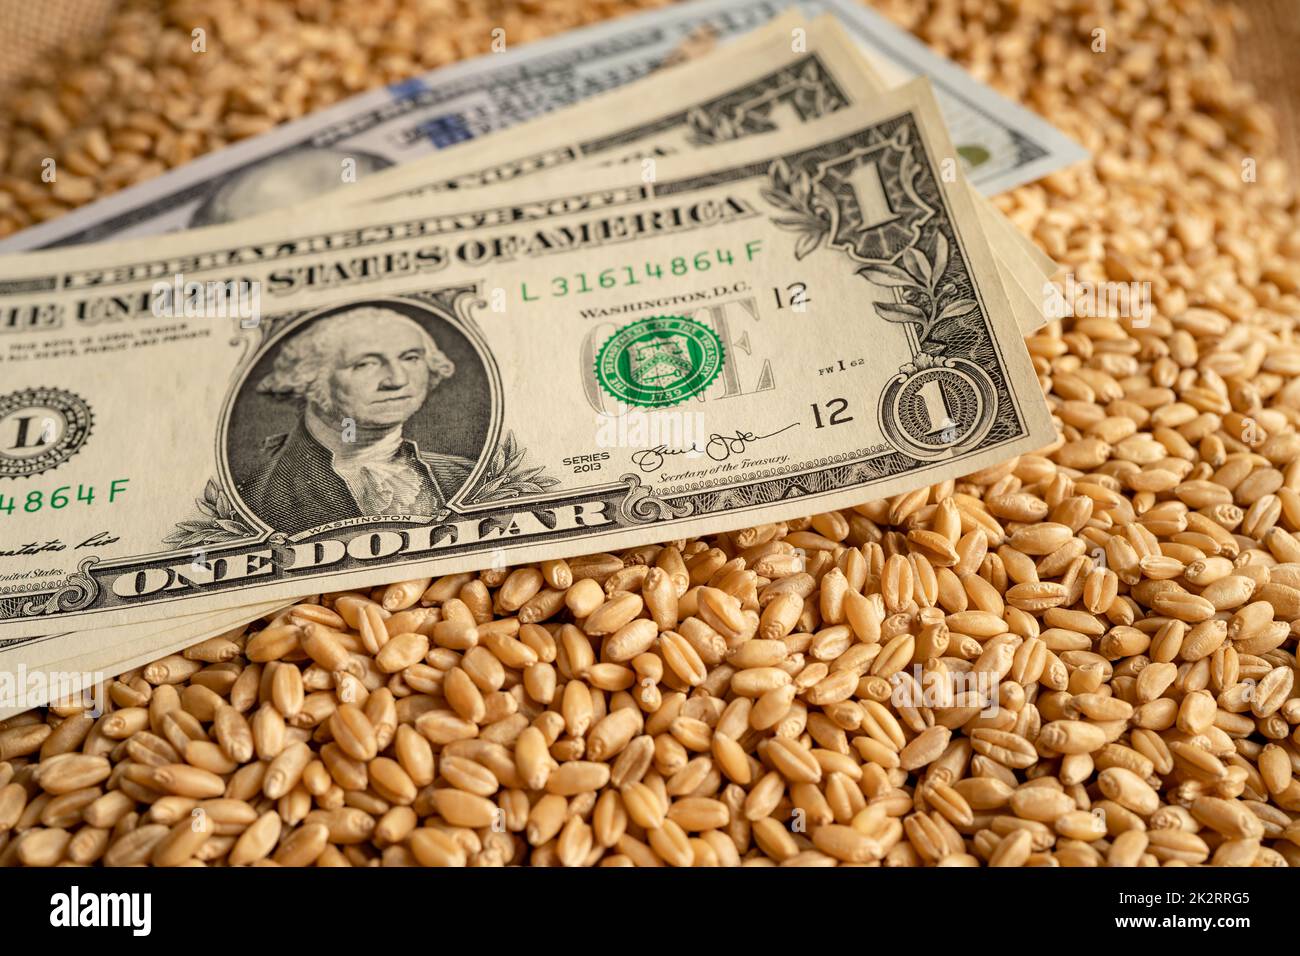 US-Dollar-Banknoten auf Getreideweizen, Global Food Crisis Concept. Stockfoto